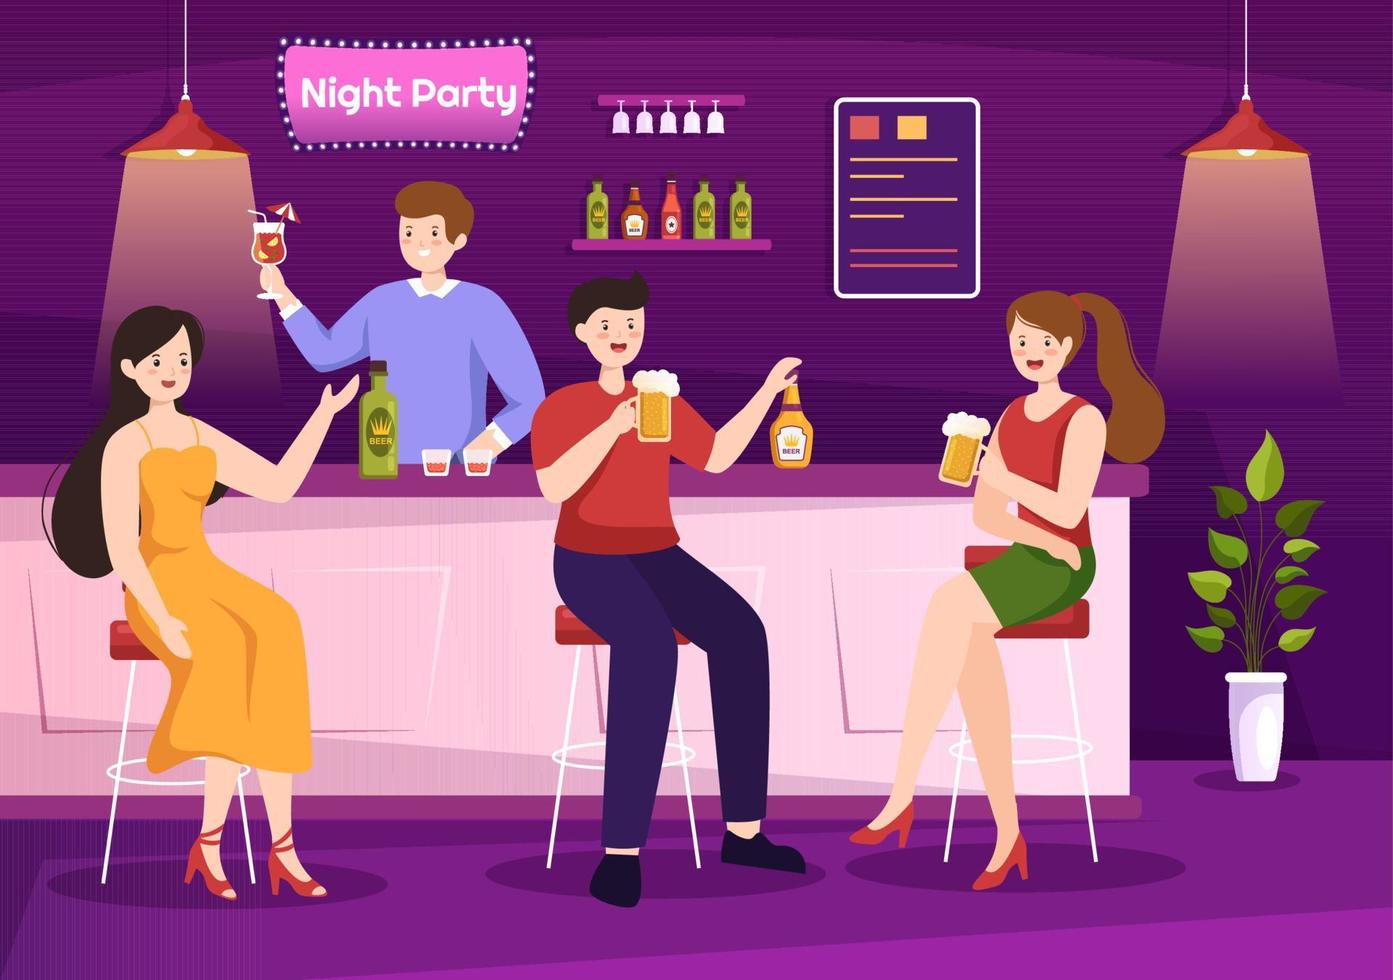 nachtclub cartoon illustratie met nachtleven zoals jongeren alcohol drinken en jeugddans begeleid door dj-muziek in de schijnwerpers vector